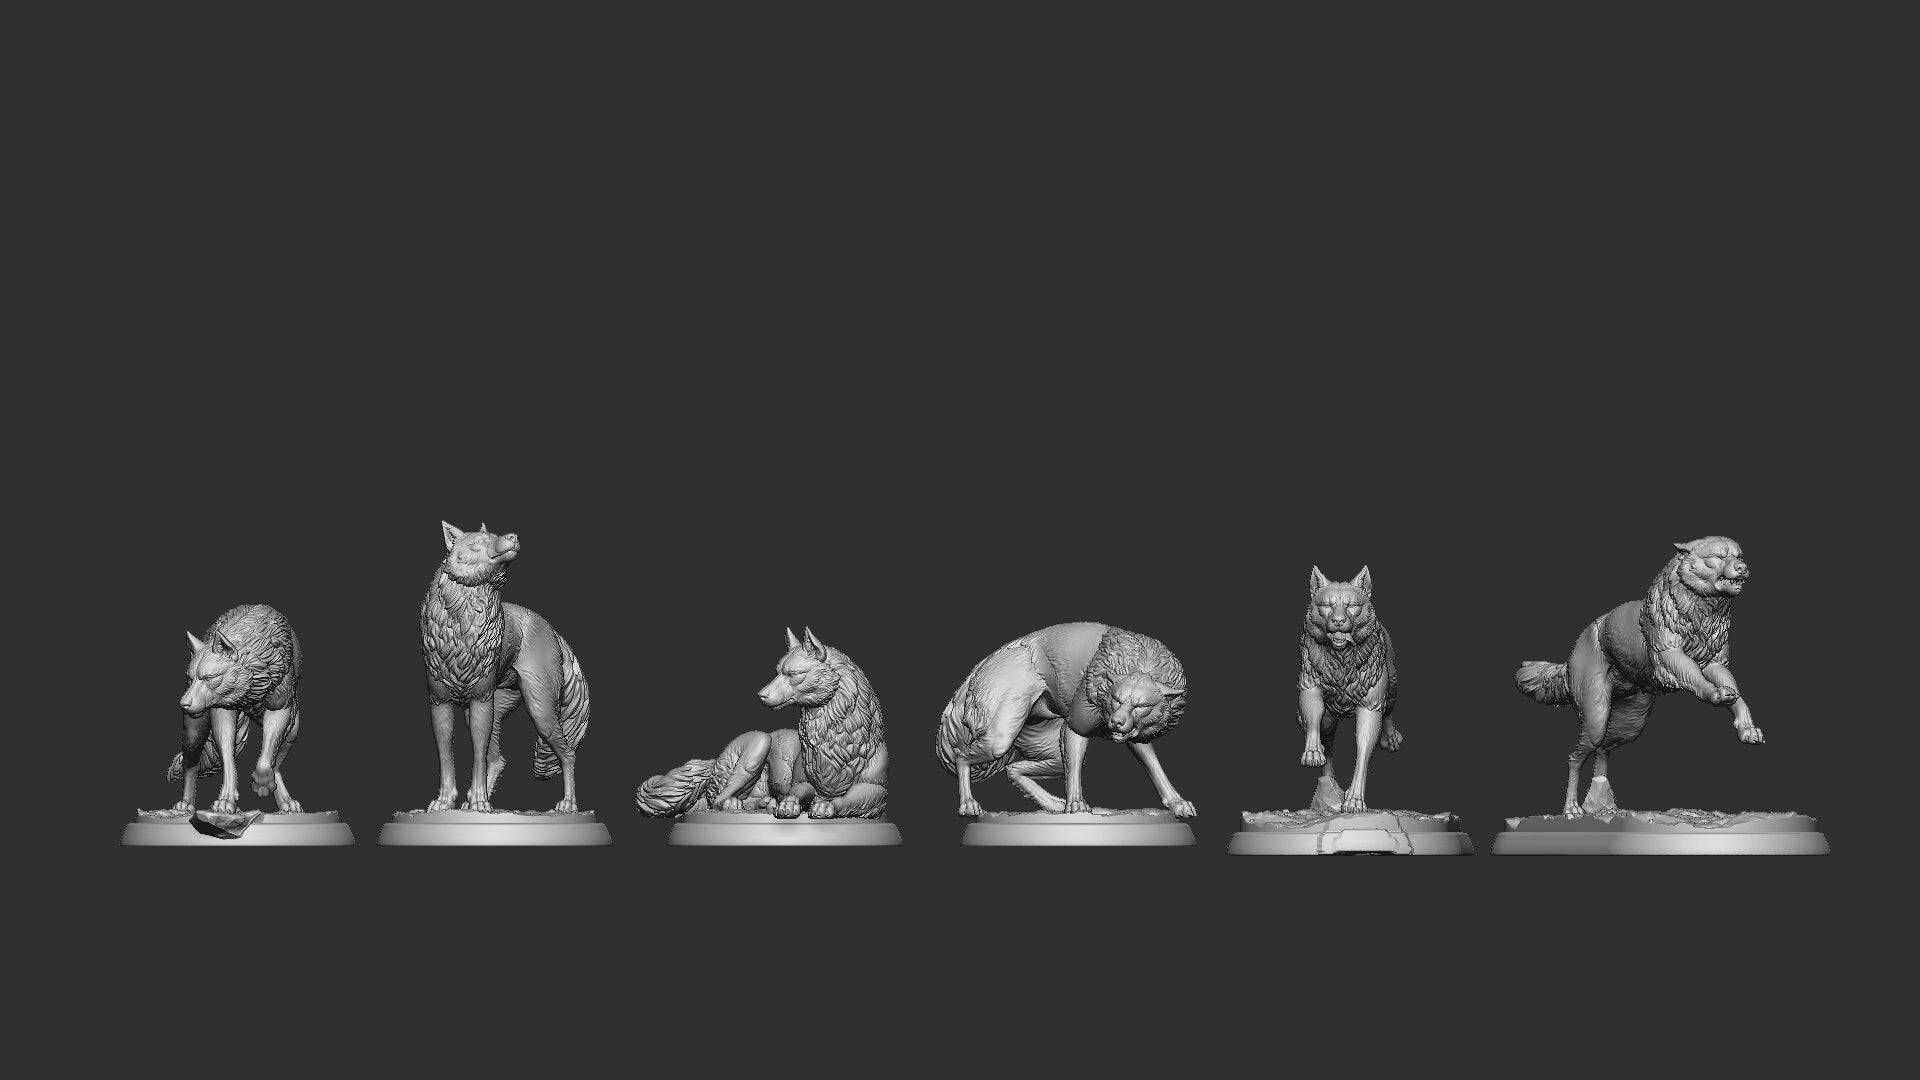 Wolves | TTRPG Miniature | White Werewolf Tavern - Tattles Told 3D